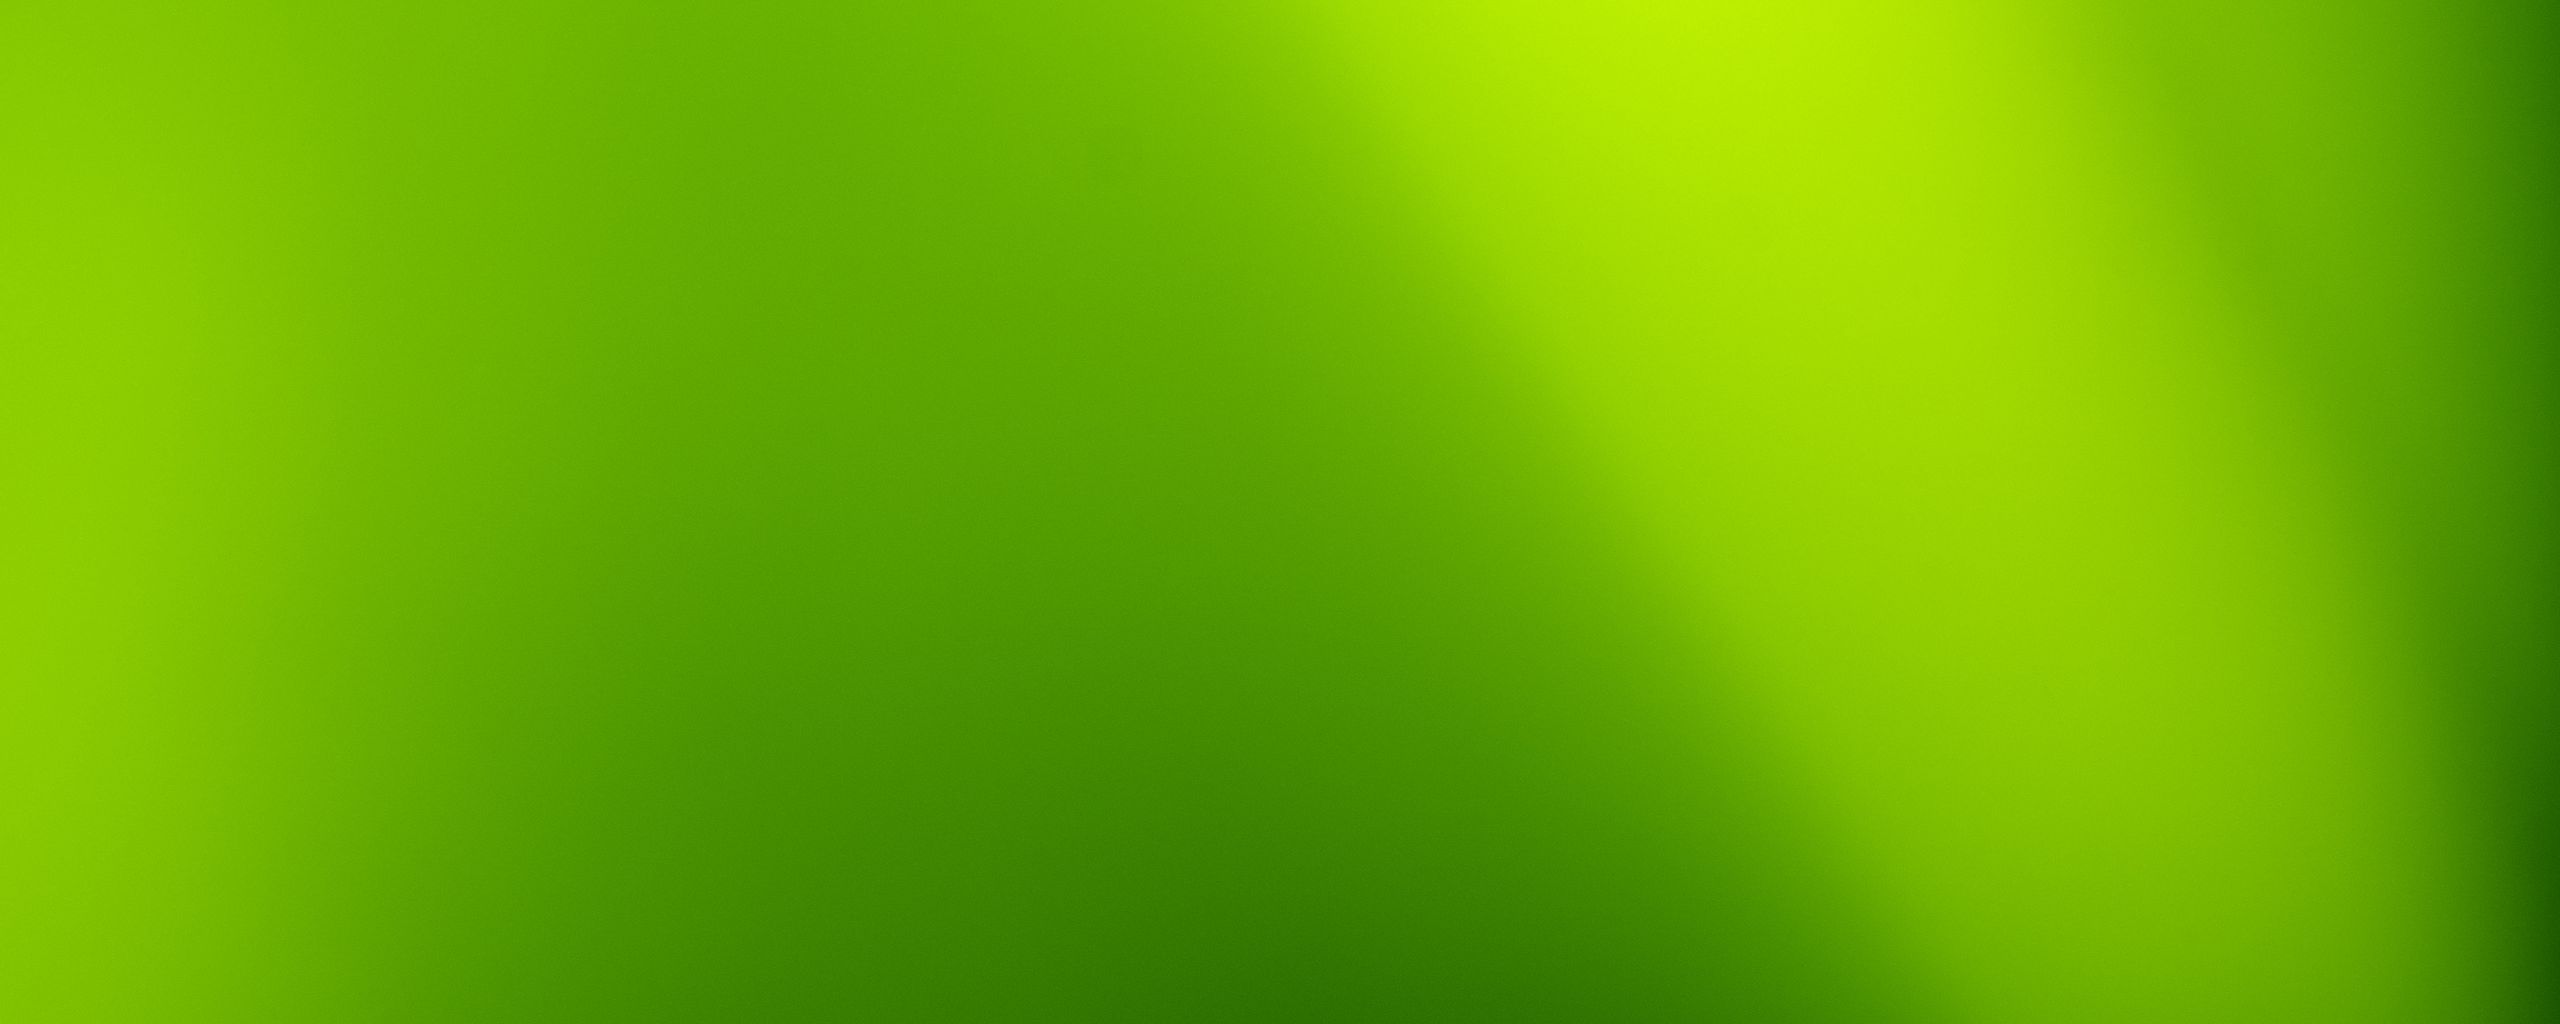 65 09 14. Фон зеленый градиент. Обои градиент салатовые. Шапка на зелёном фоне.